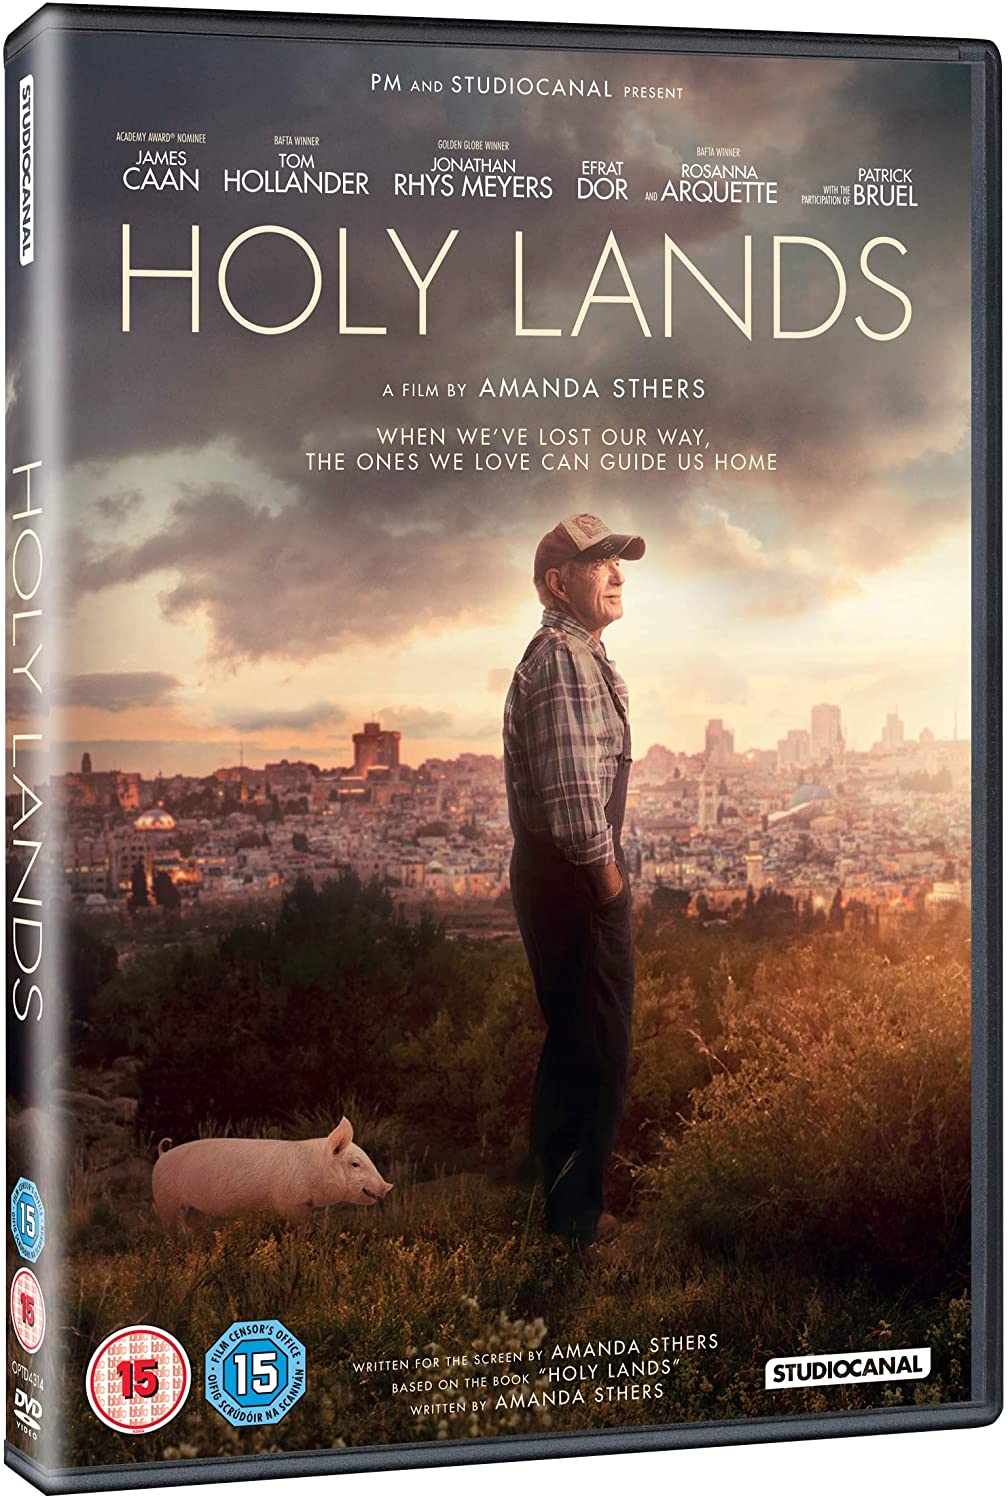 Holy Lands -  Drama [DVD]